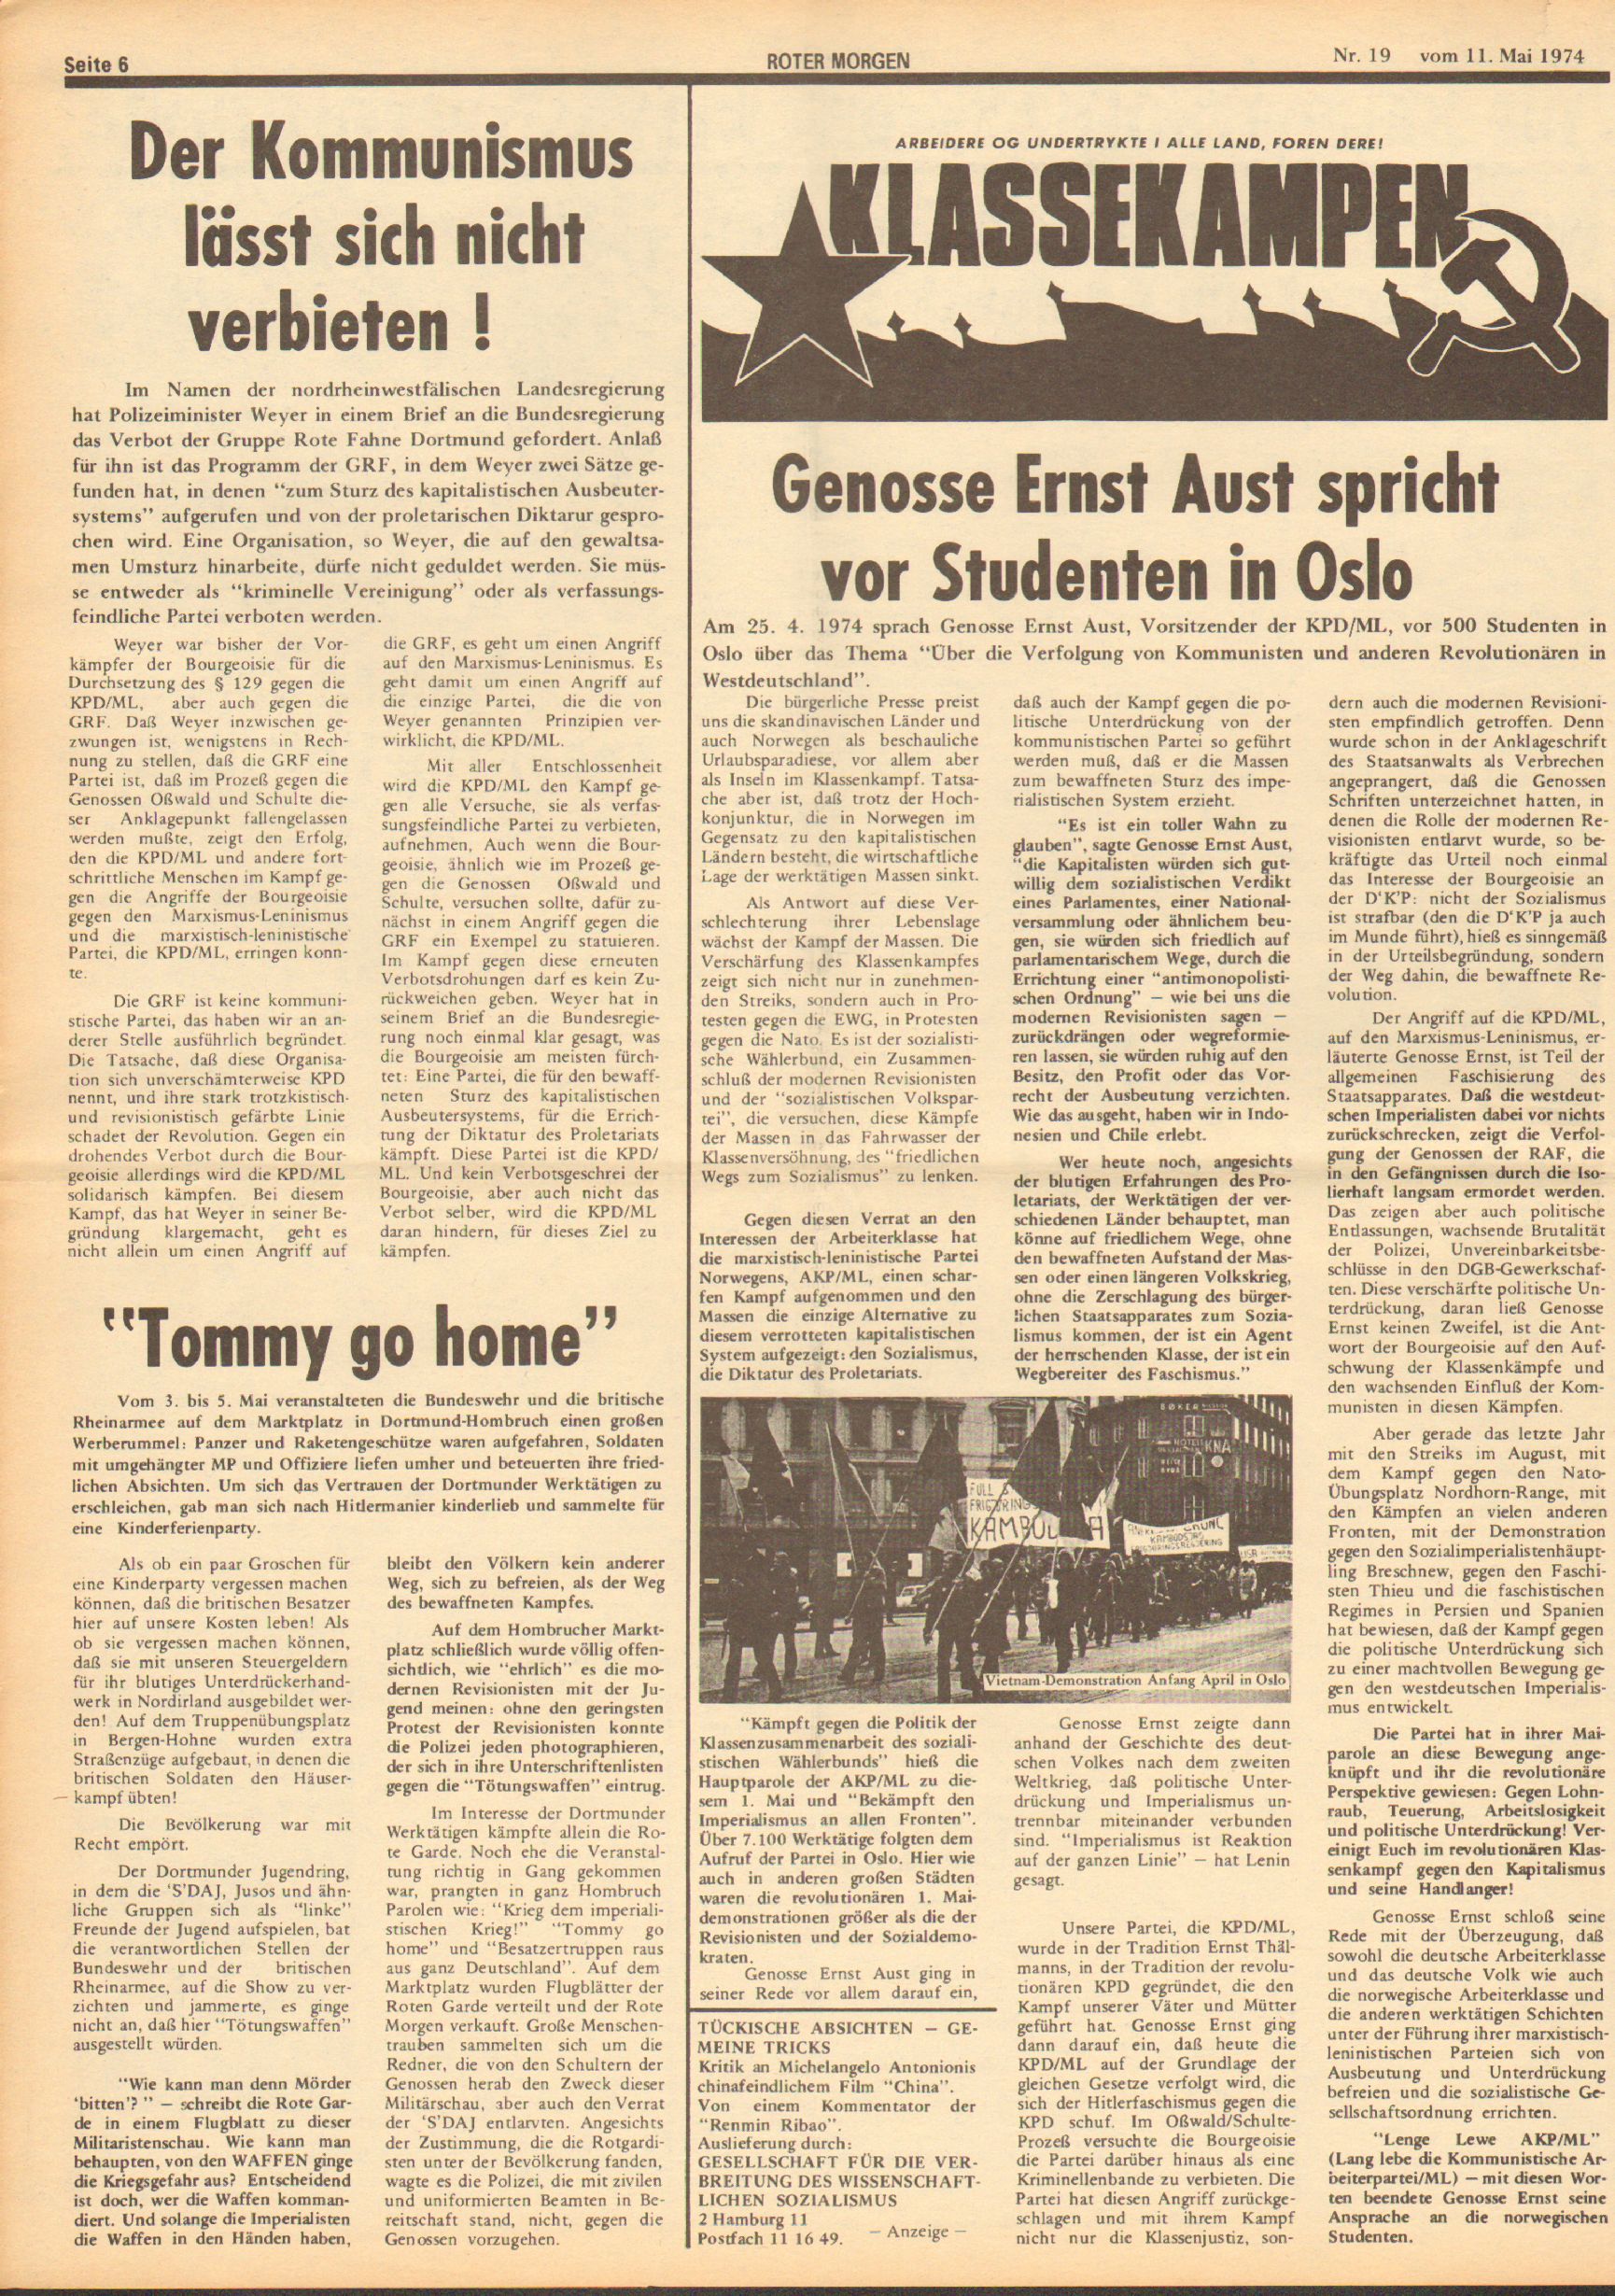 Roter Morgen, 8. Jg., 11. Mai 1974, Nr. 19, Seite 6